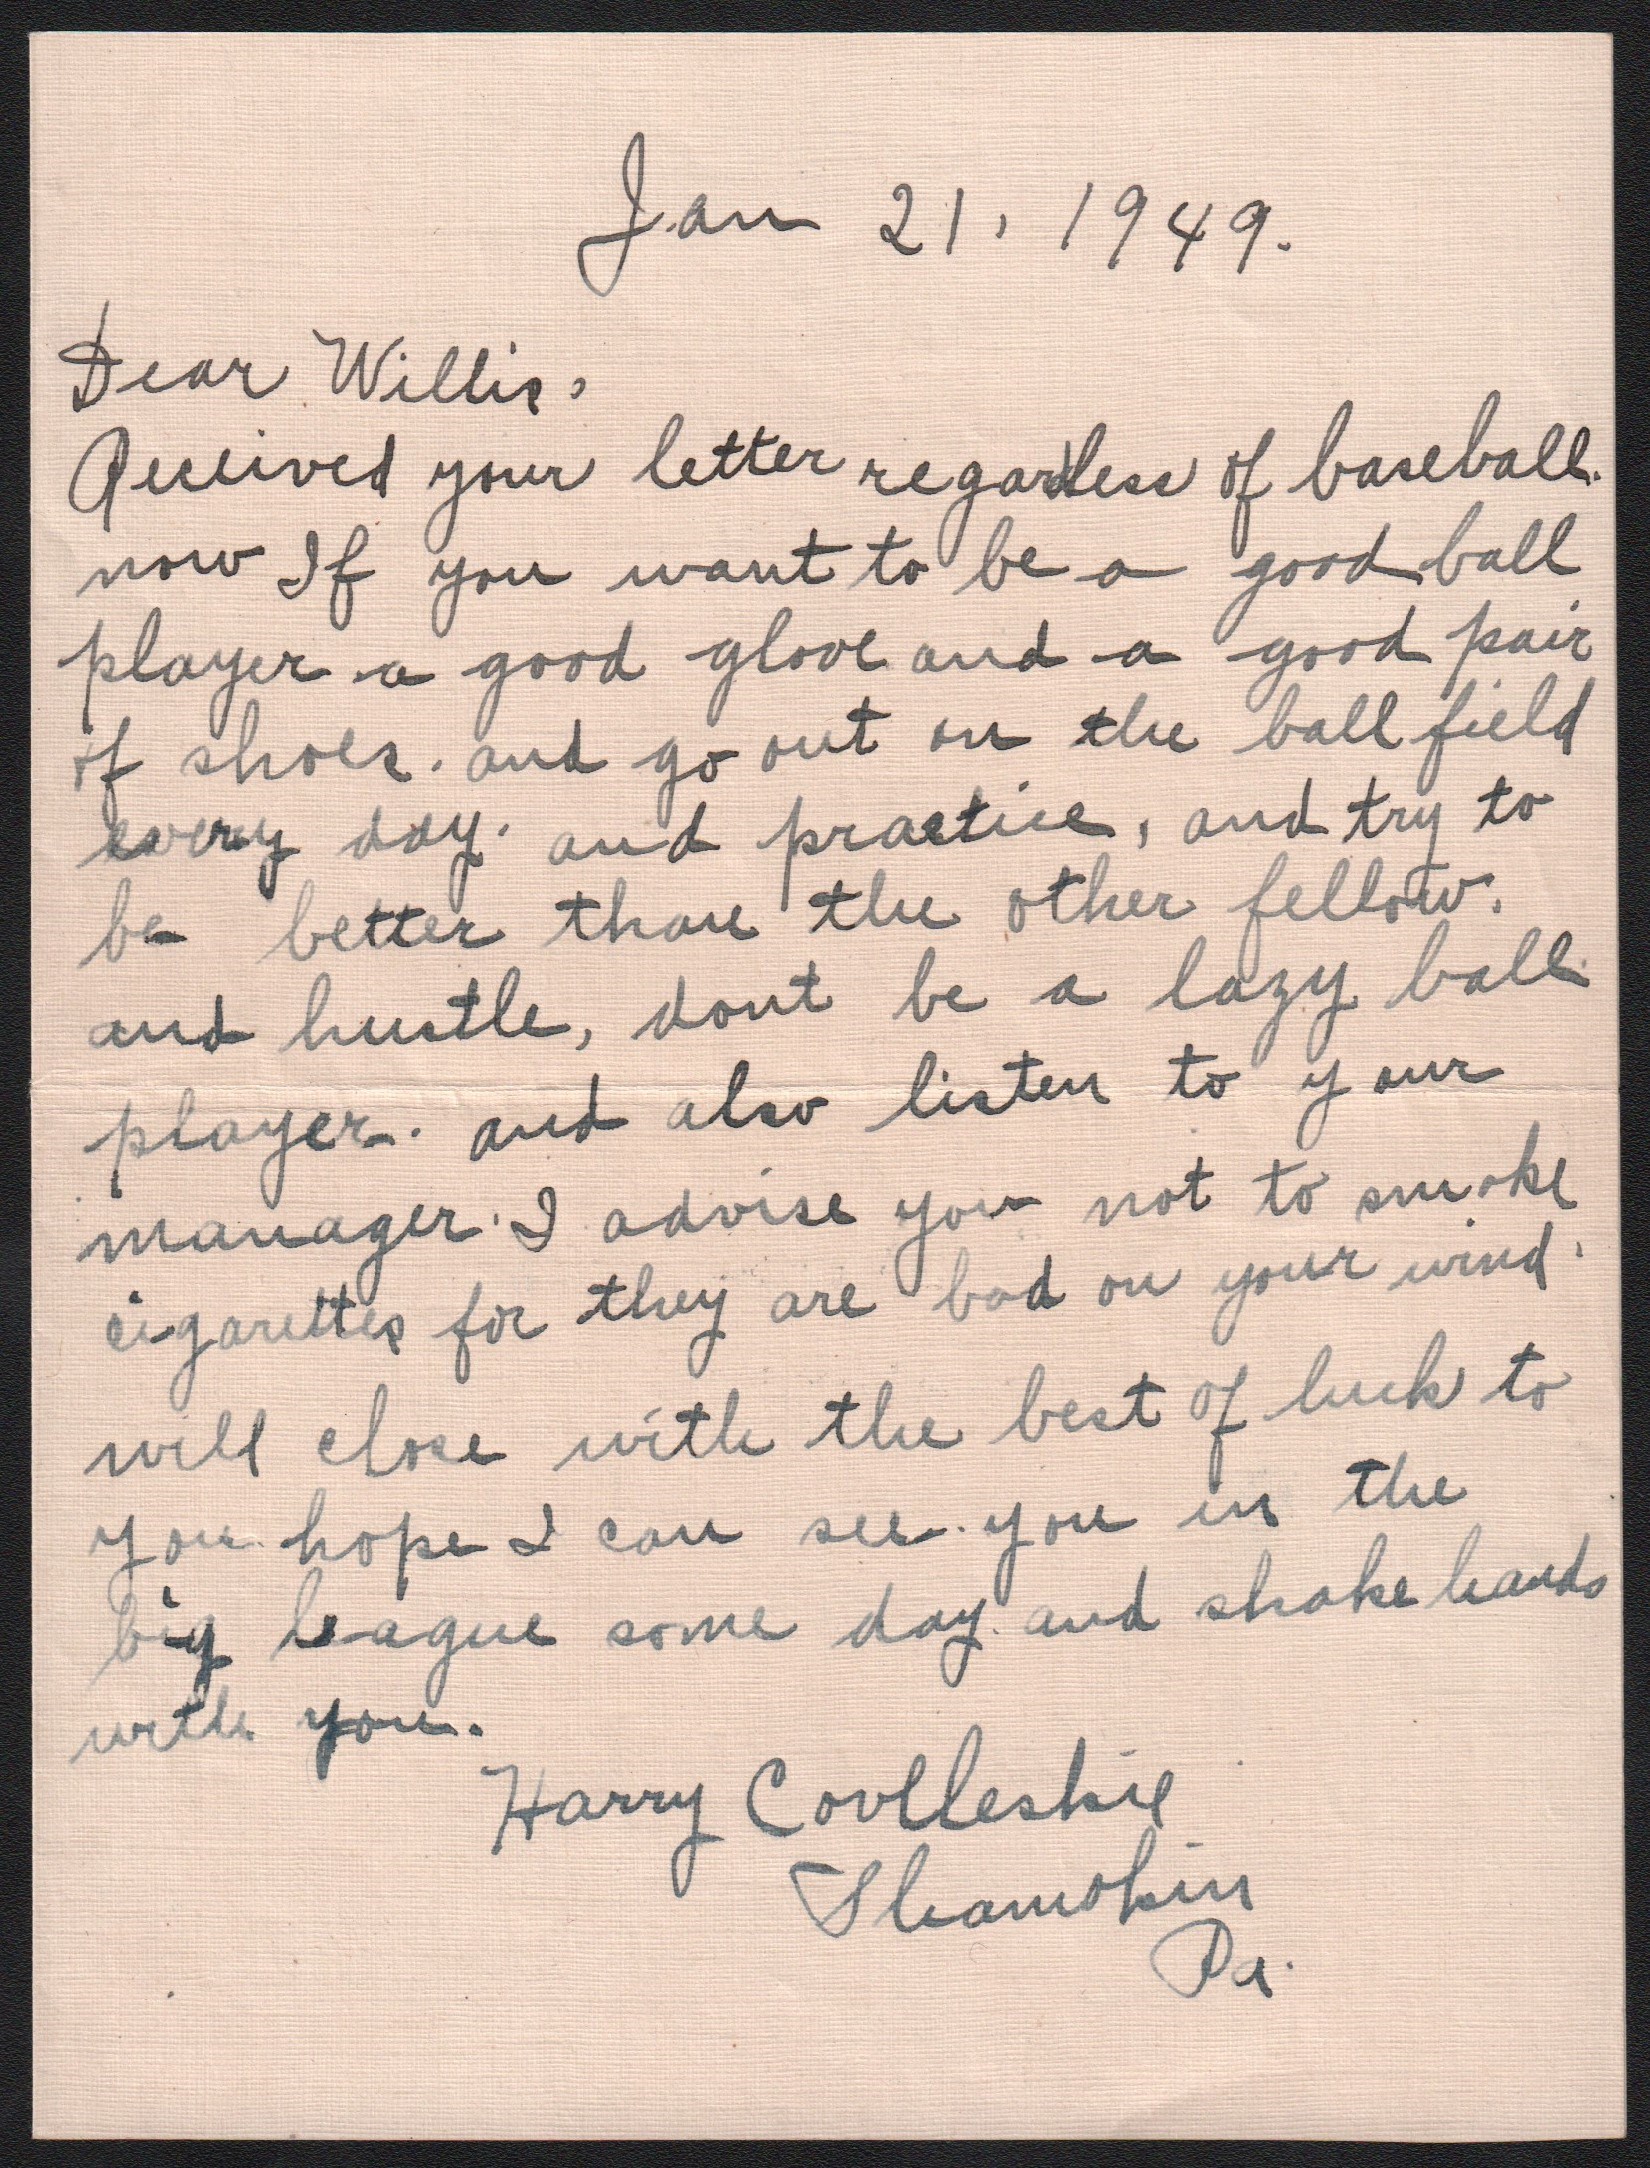 Baseball Autographs - 1949 Harry Coveleski Handwritten Letter - Dangers of Smoking & Baseball